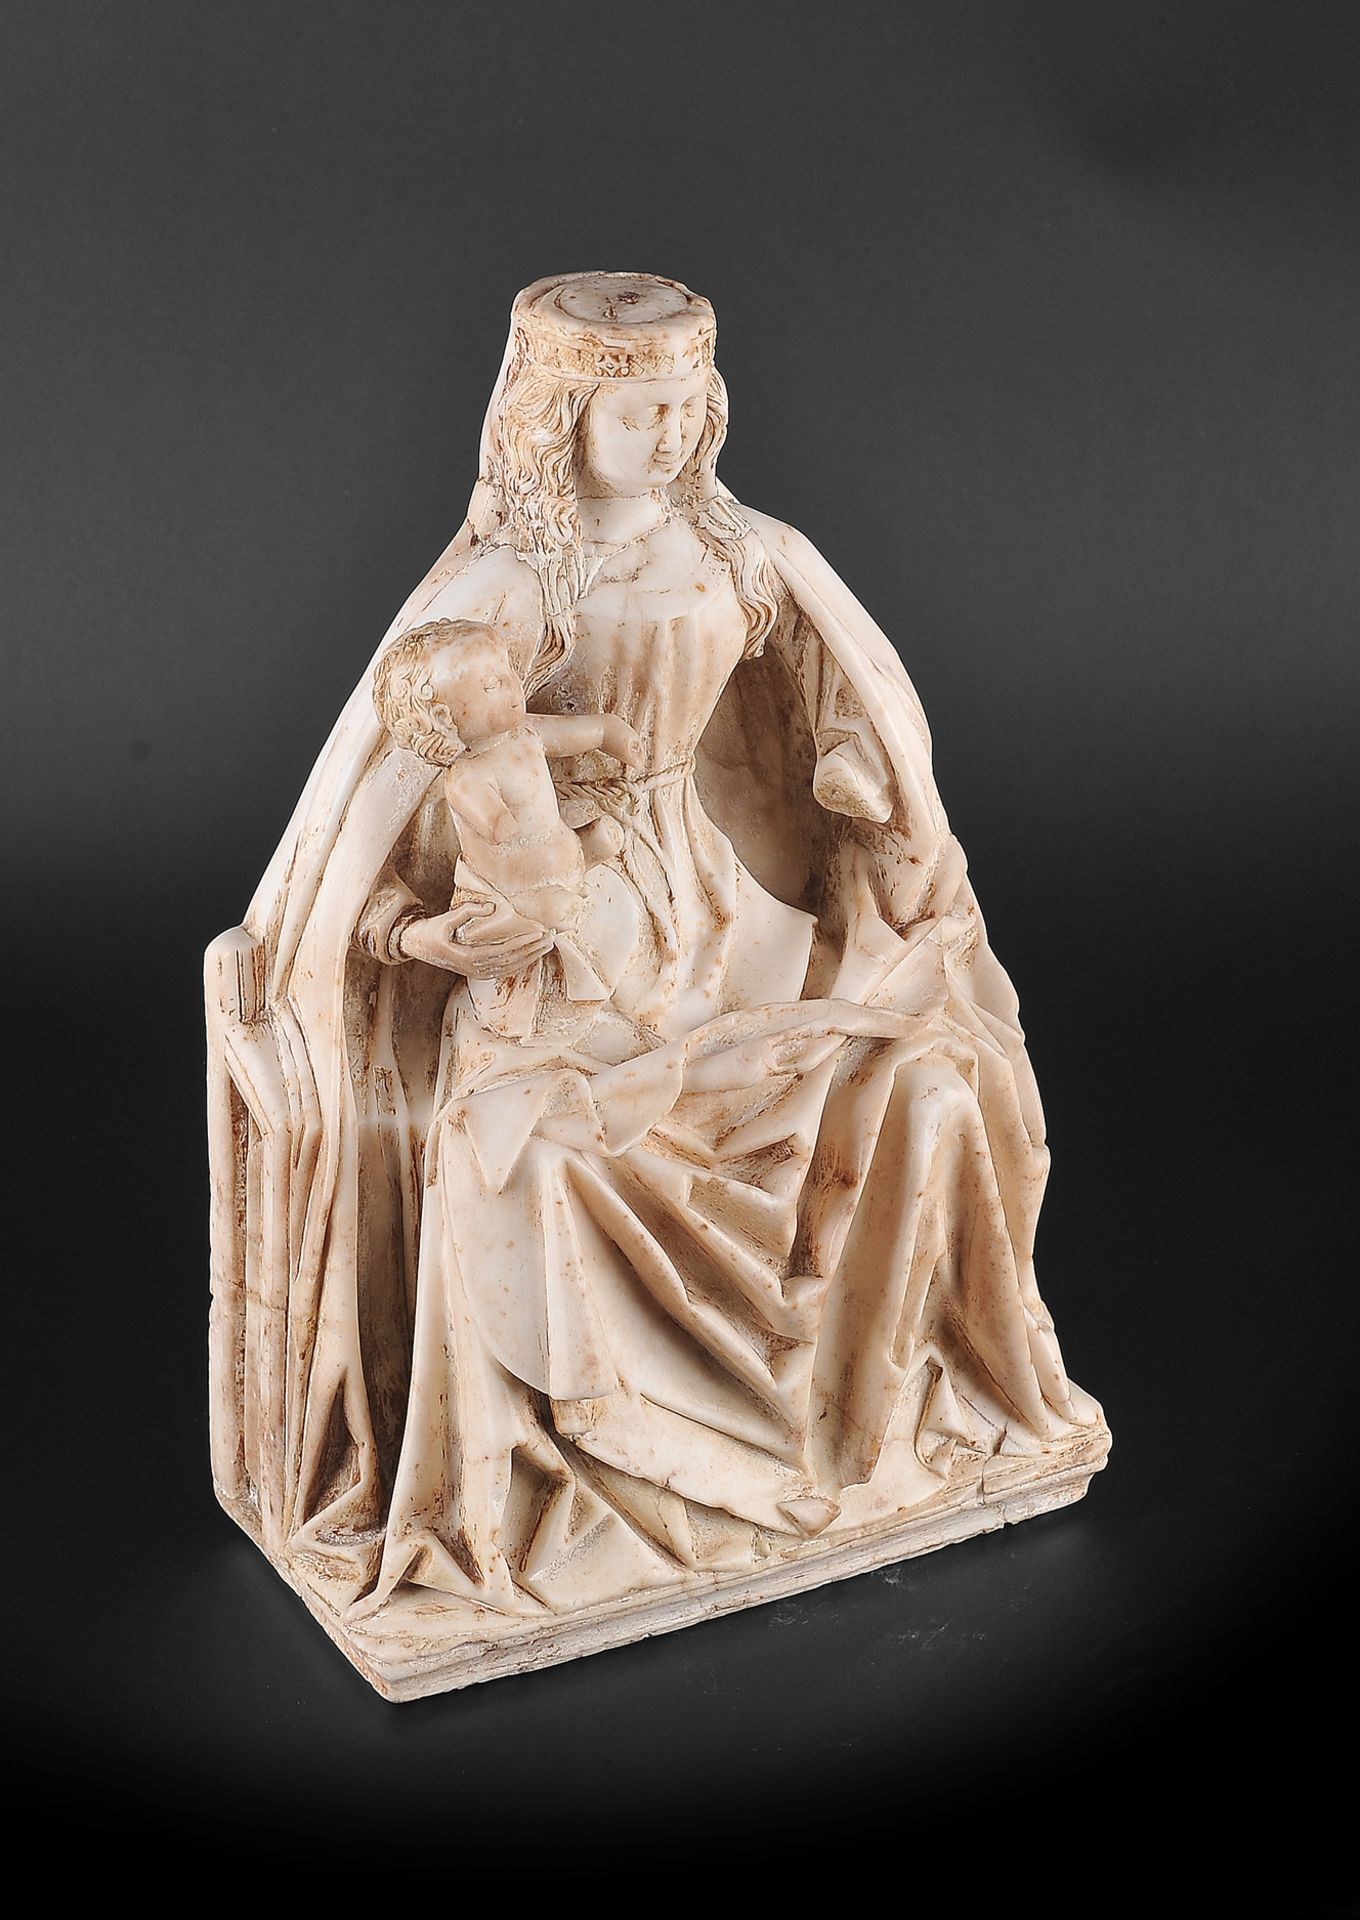 Gil de Siloe, Antwerpen 1440 – 1501 Burgos (und Werkstatt), Sitzende Madonna, um 1485/90 - Image 6 of 25